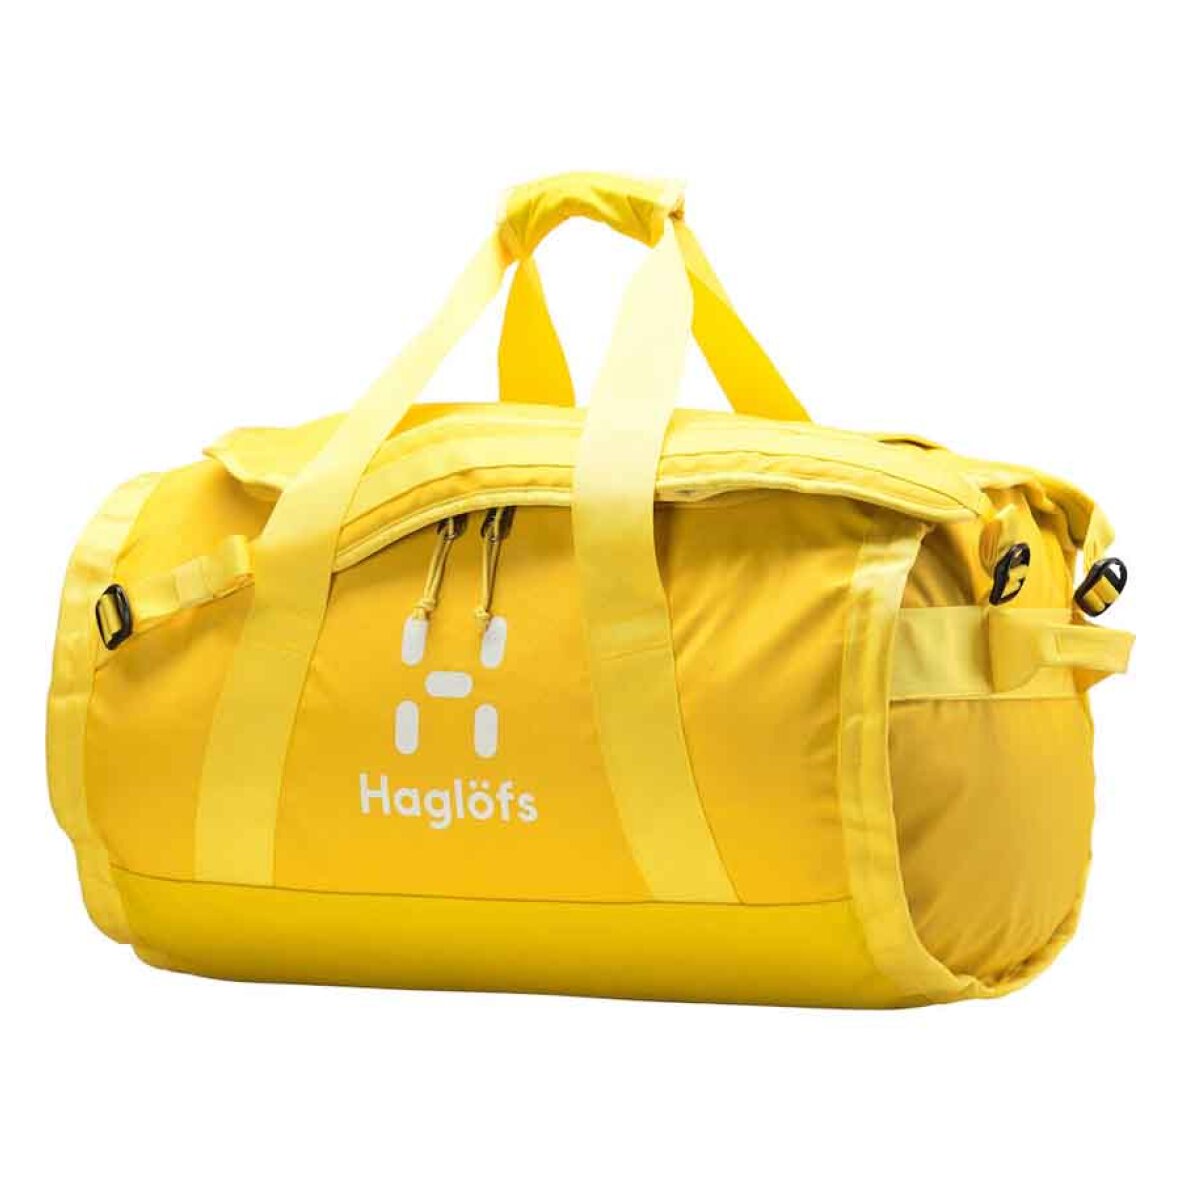 Haglöfs Lava 50 duffelbag: Køb en rummelig og taske